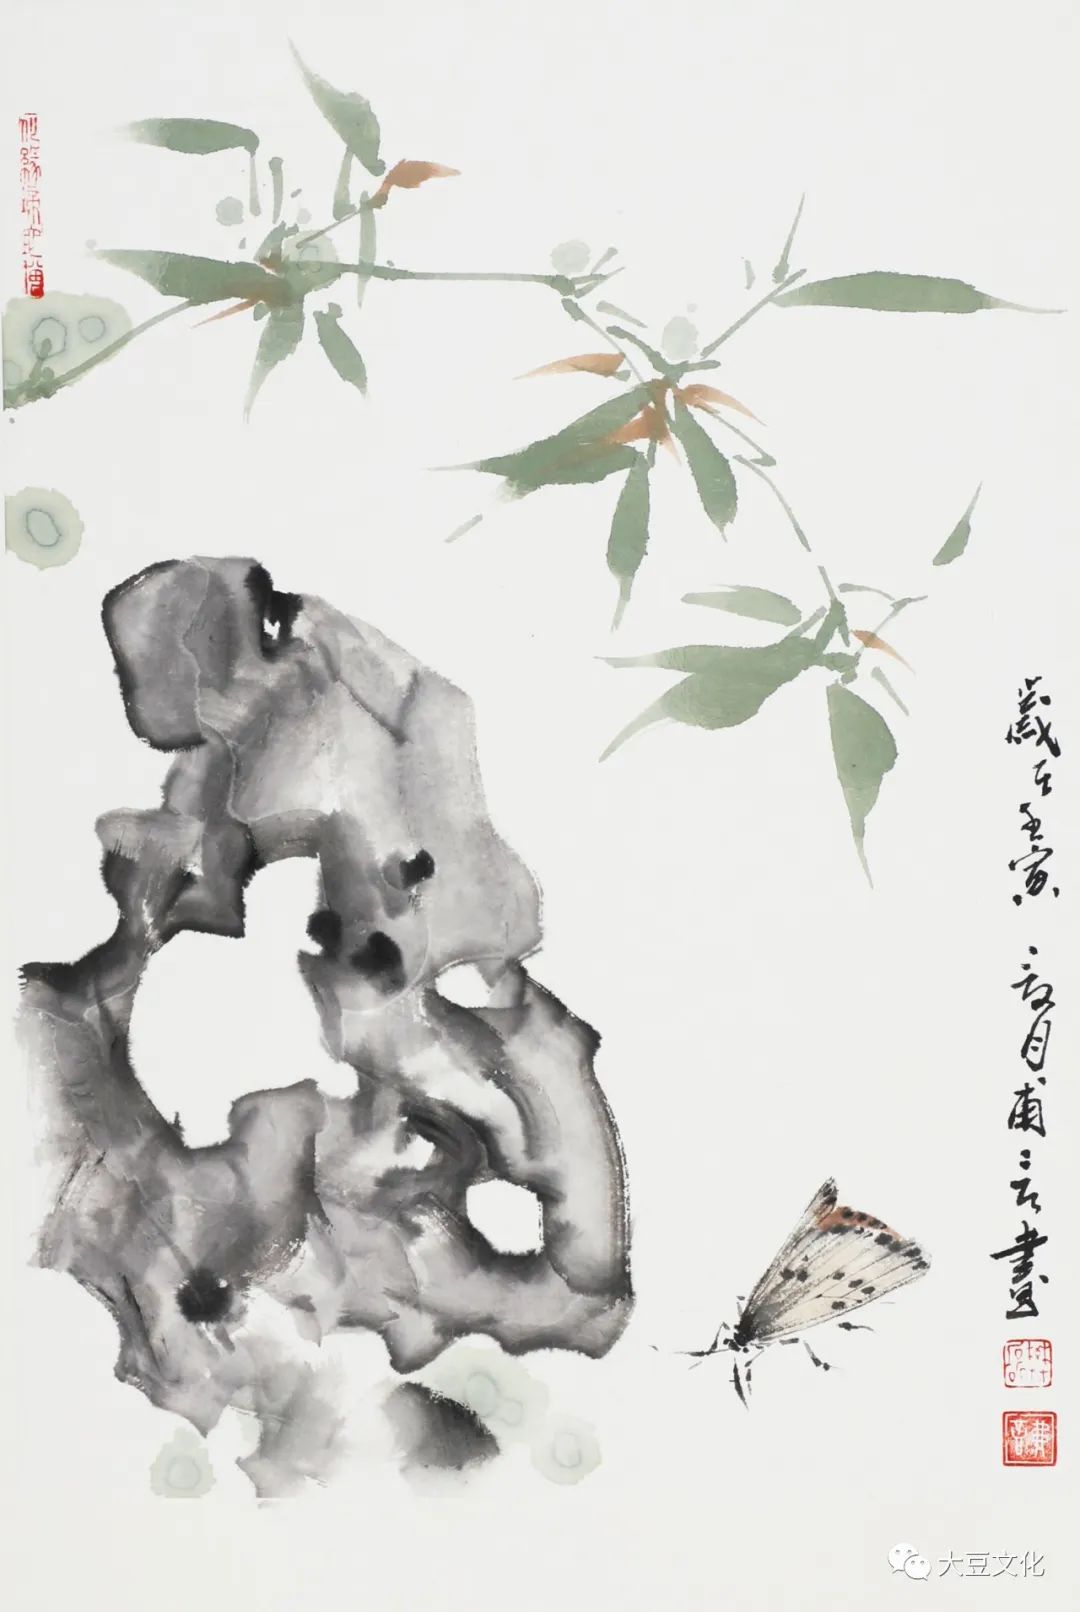 蝶泛灵石之境——青年画家樊磊国画解读